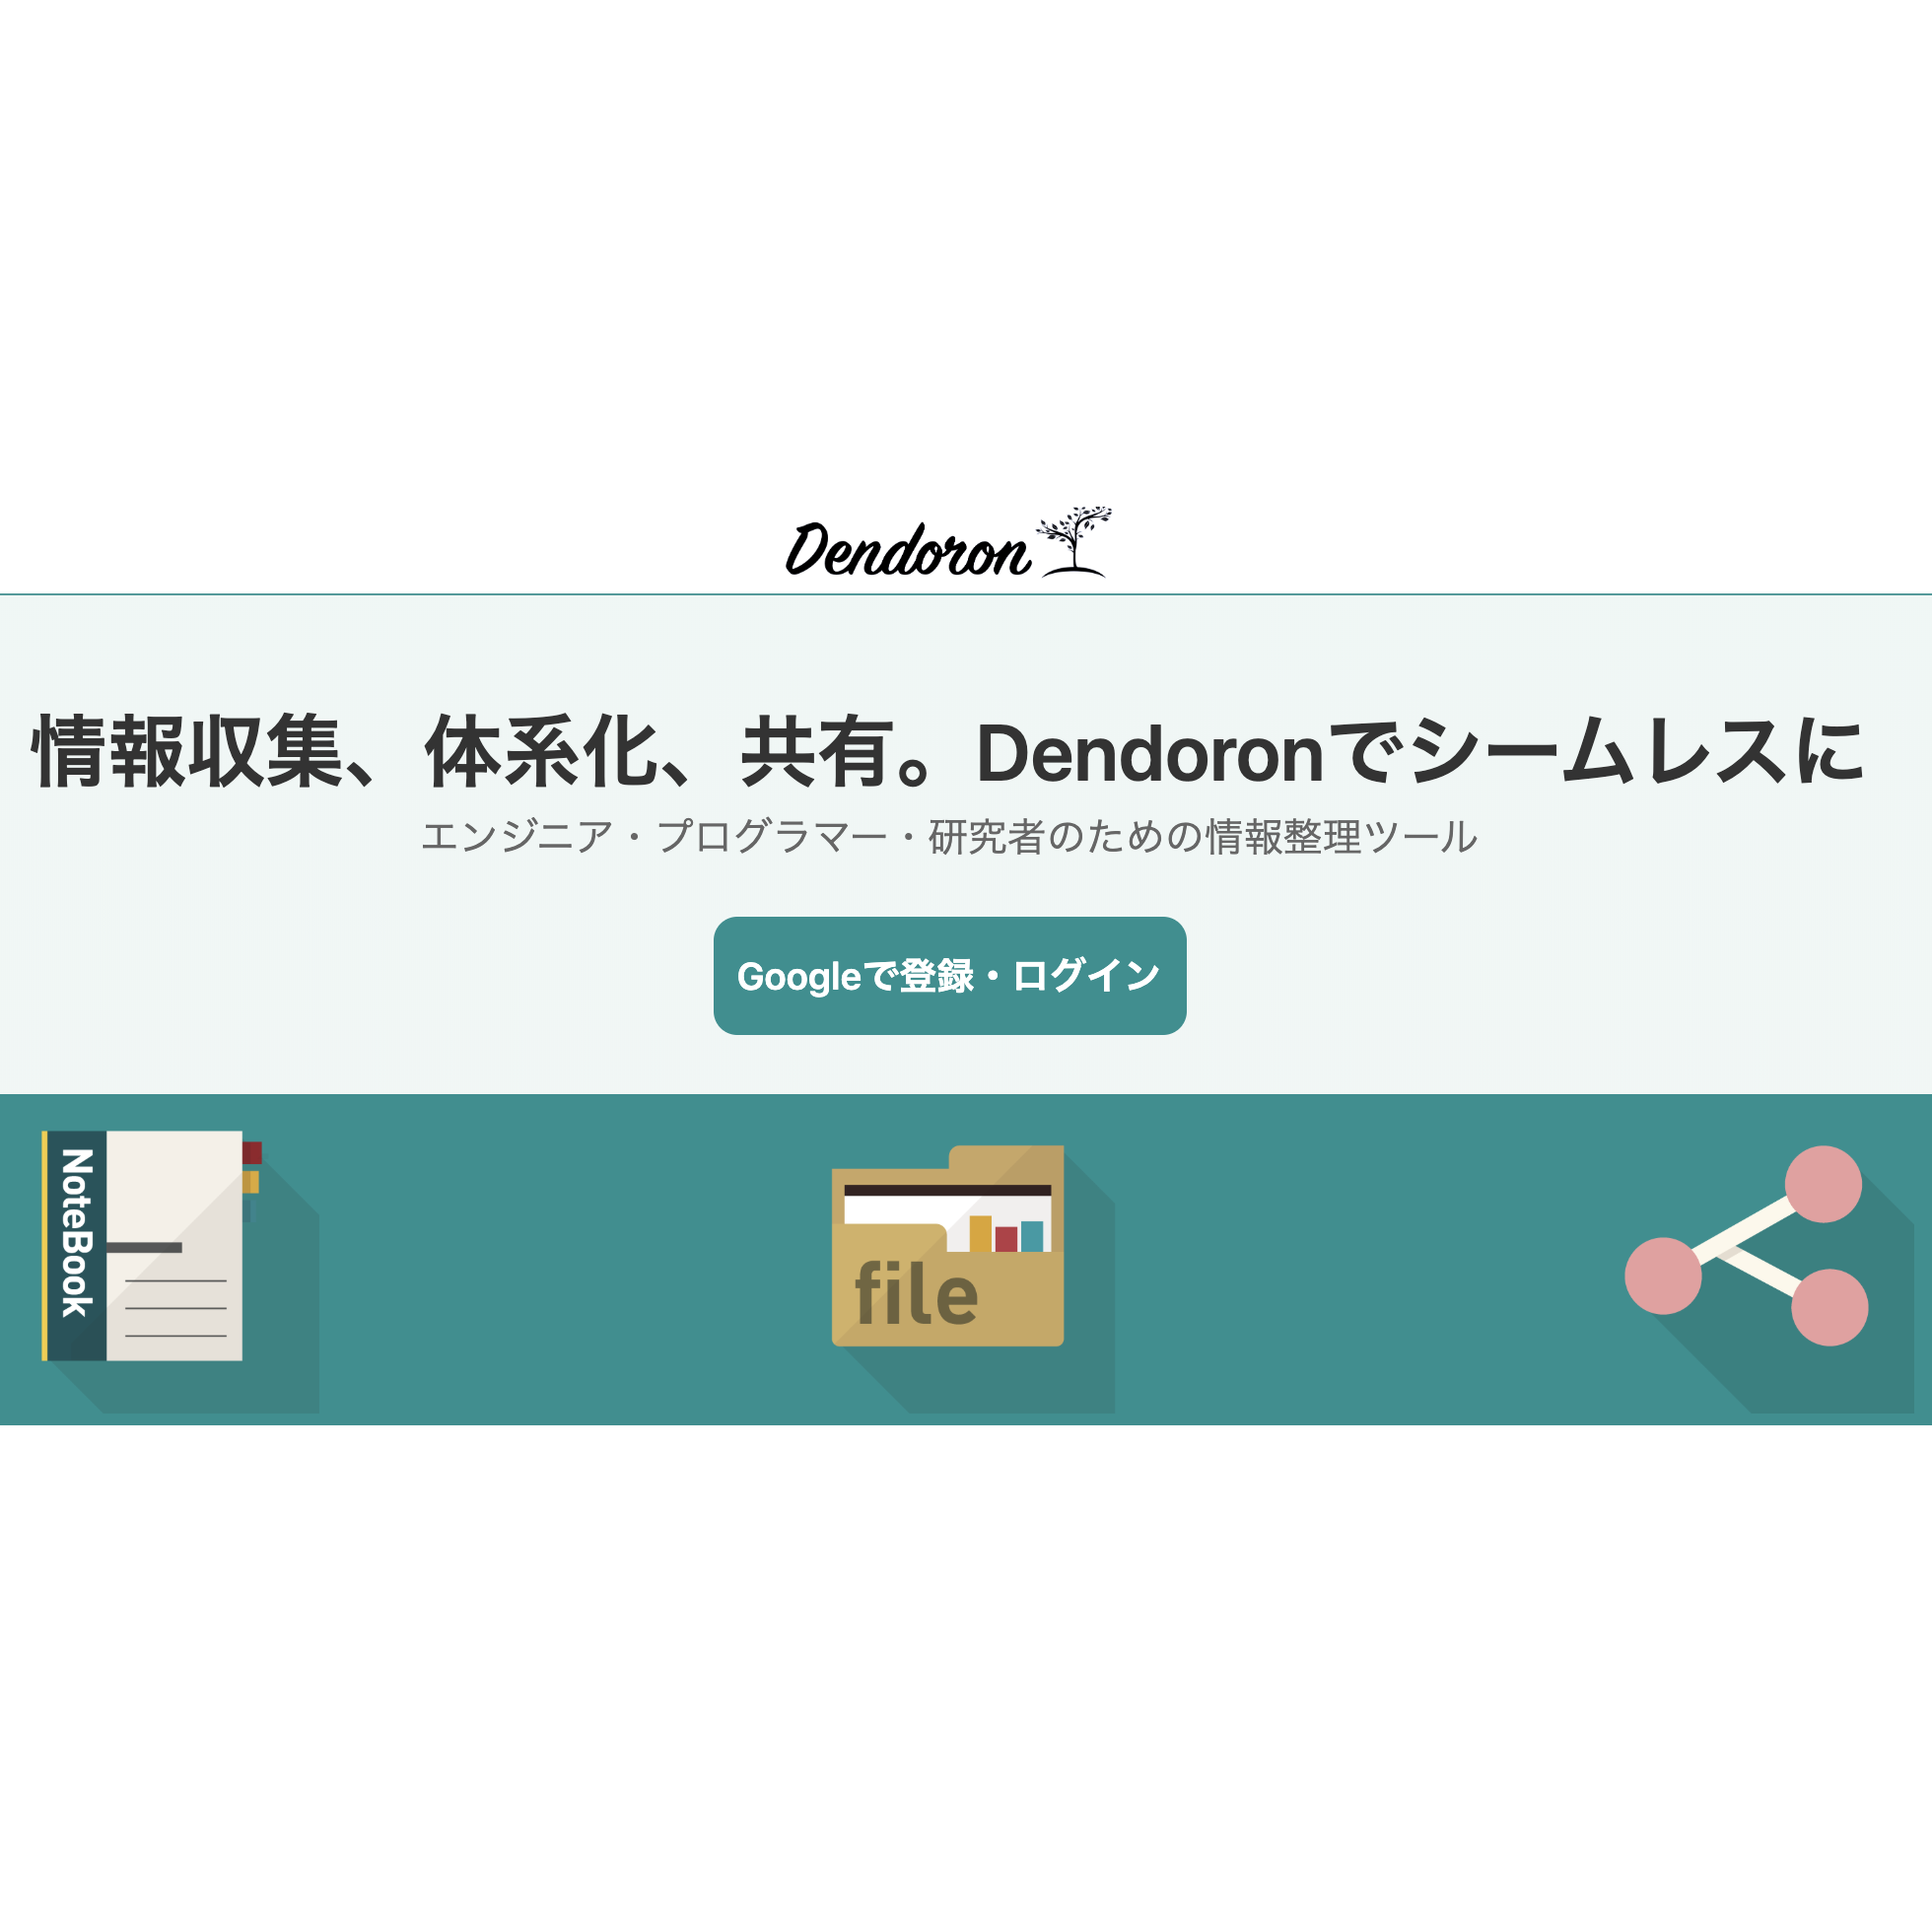 Dendoron.com